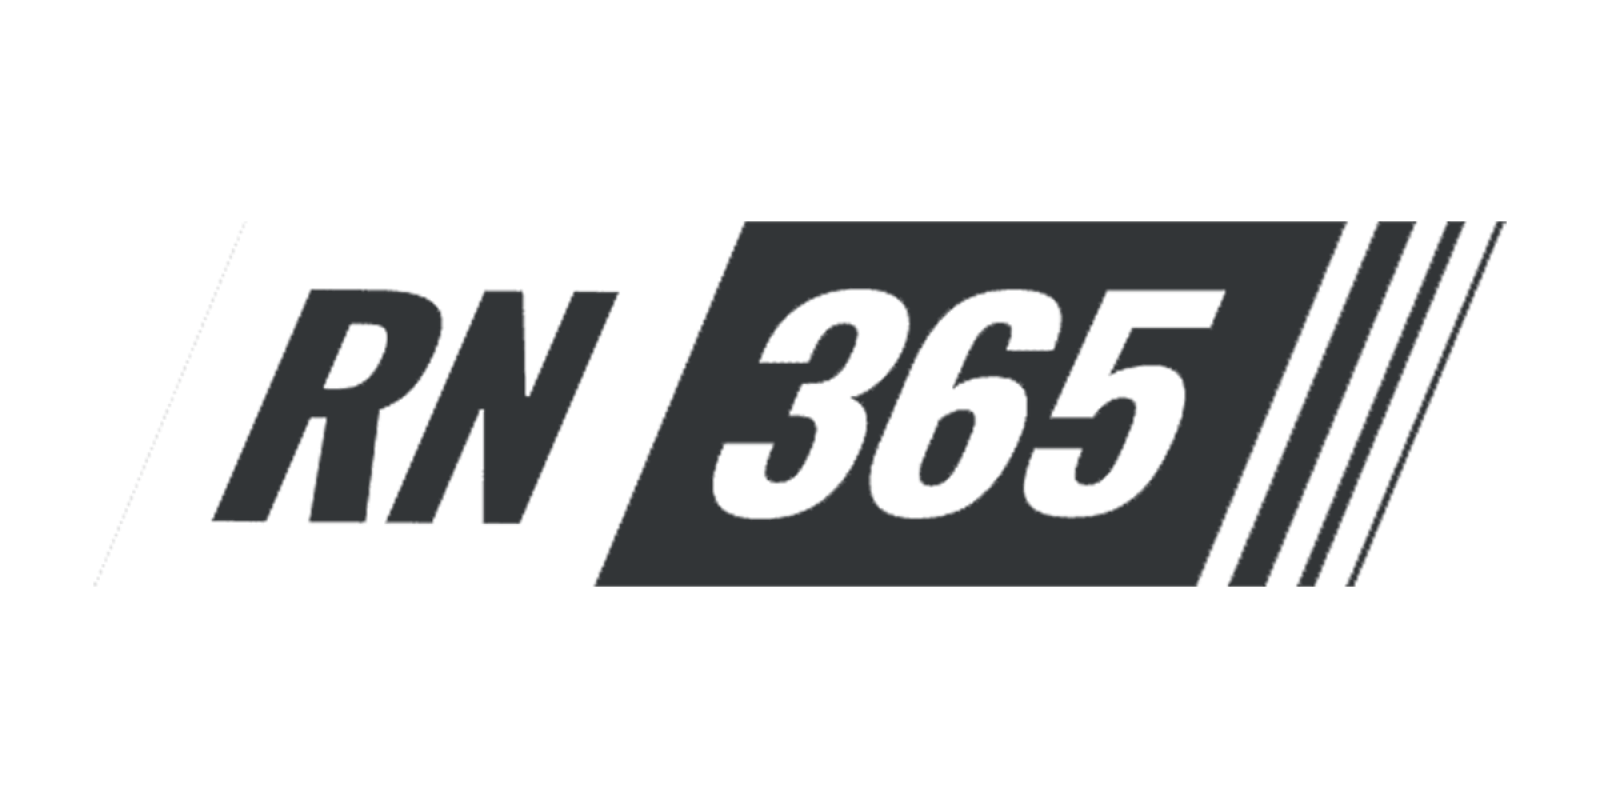 RacingNews365